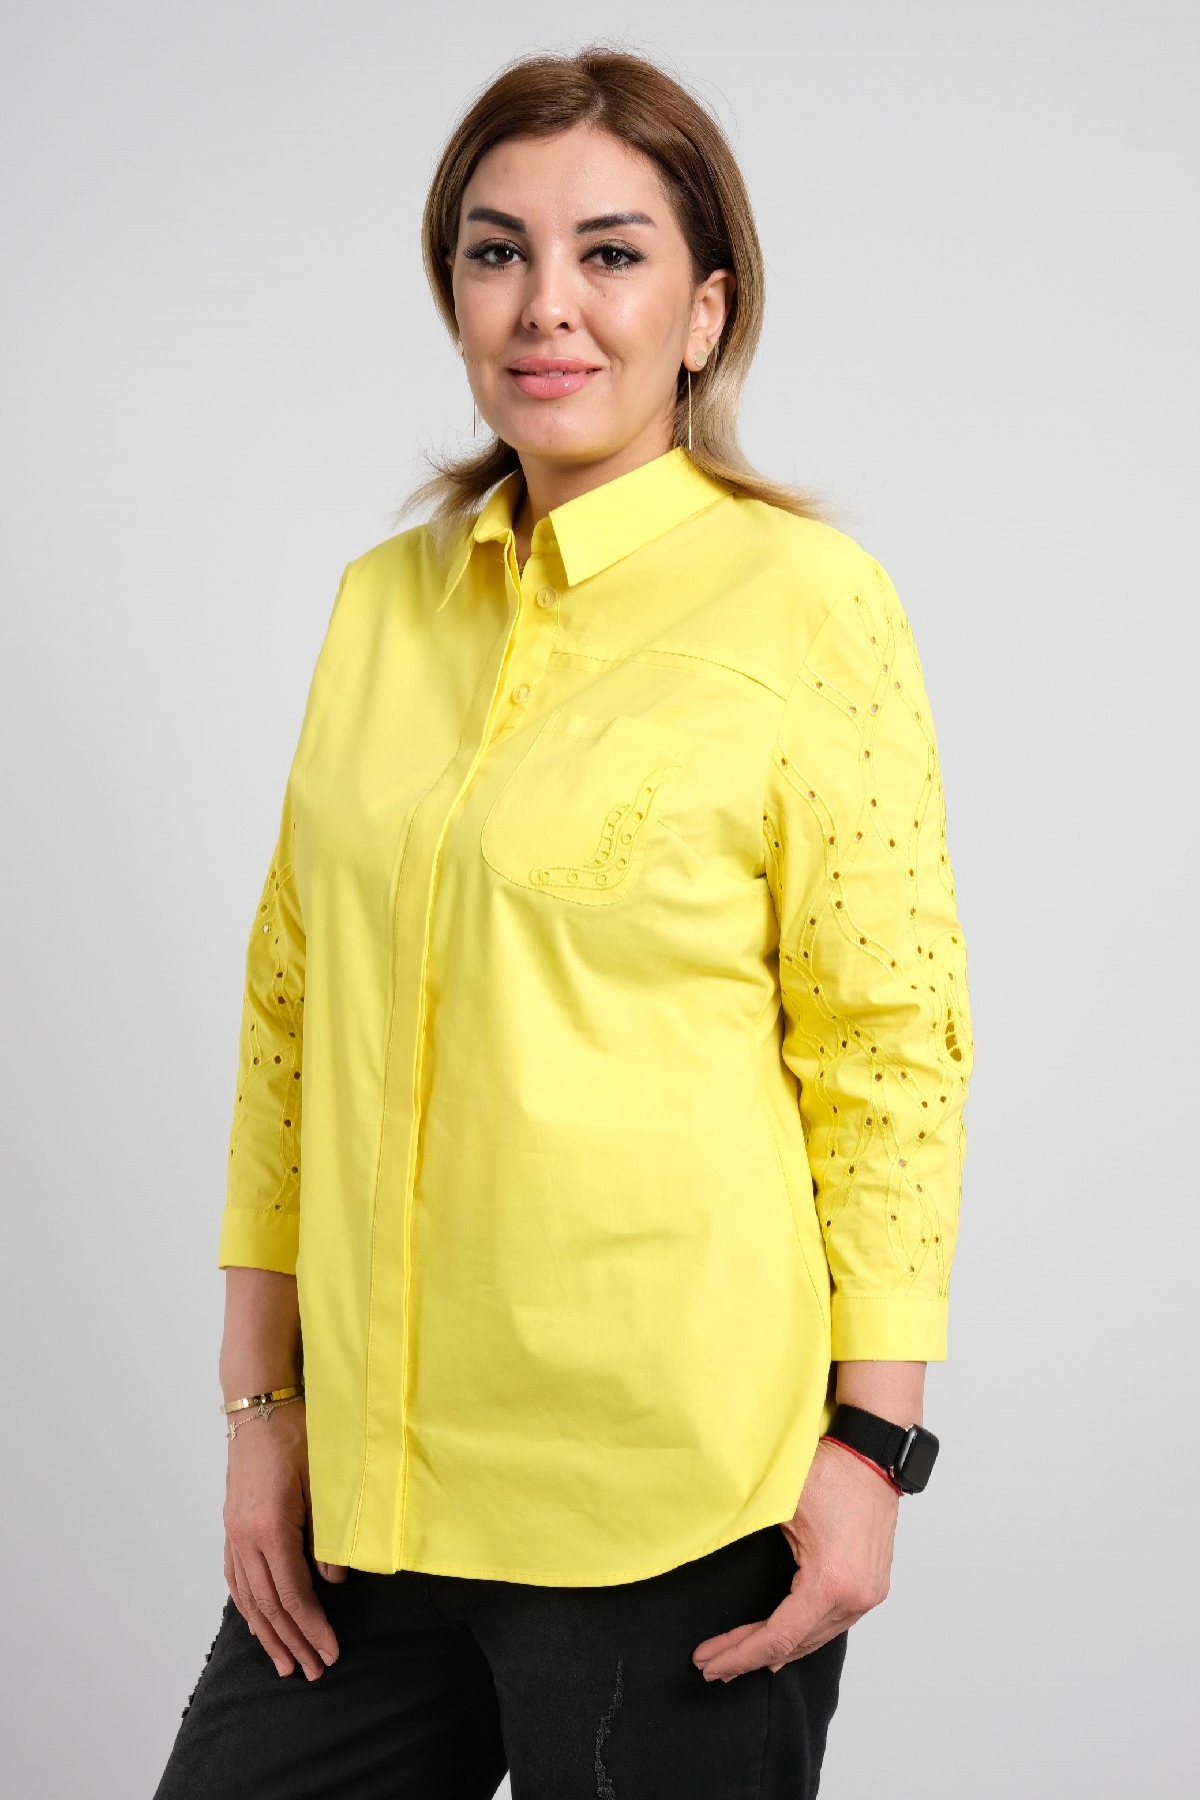 Shirt-Yellow